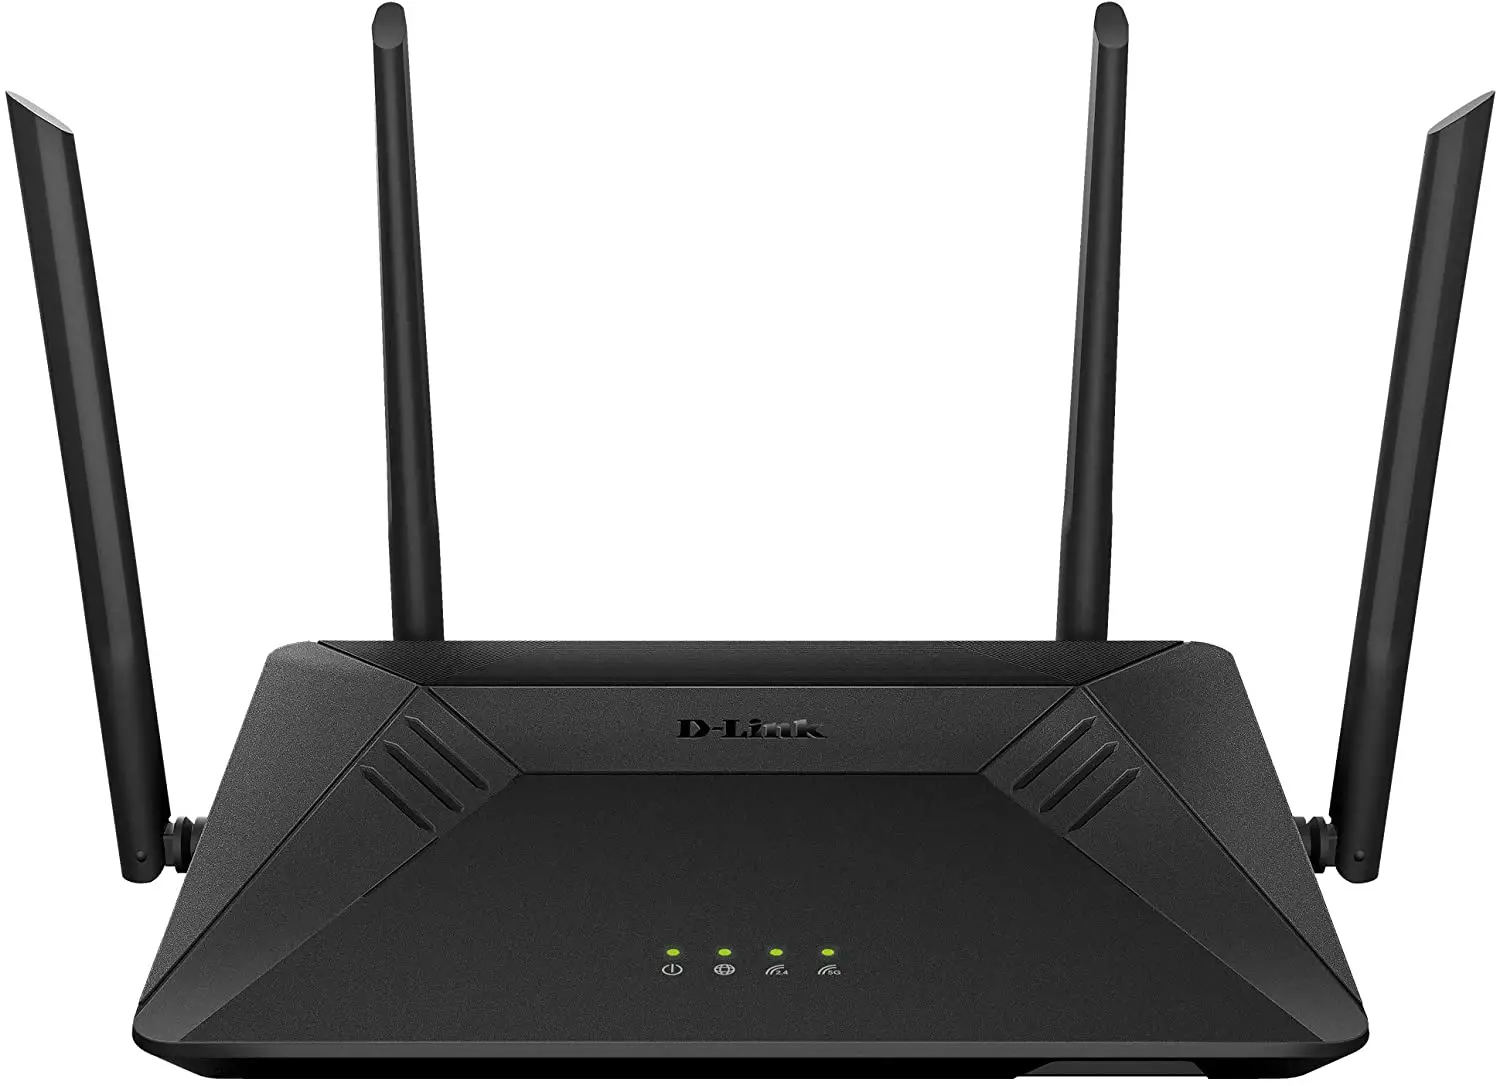 D-Link Wireless DIR-867 WiFi Router AC1750